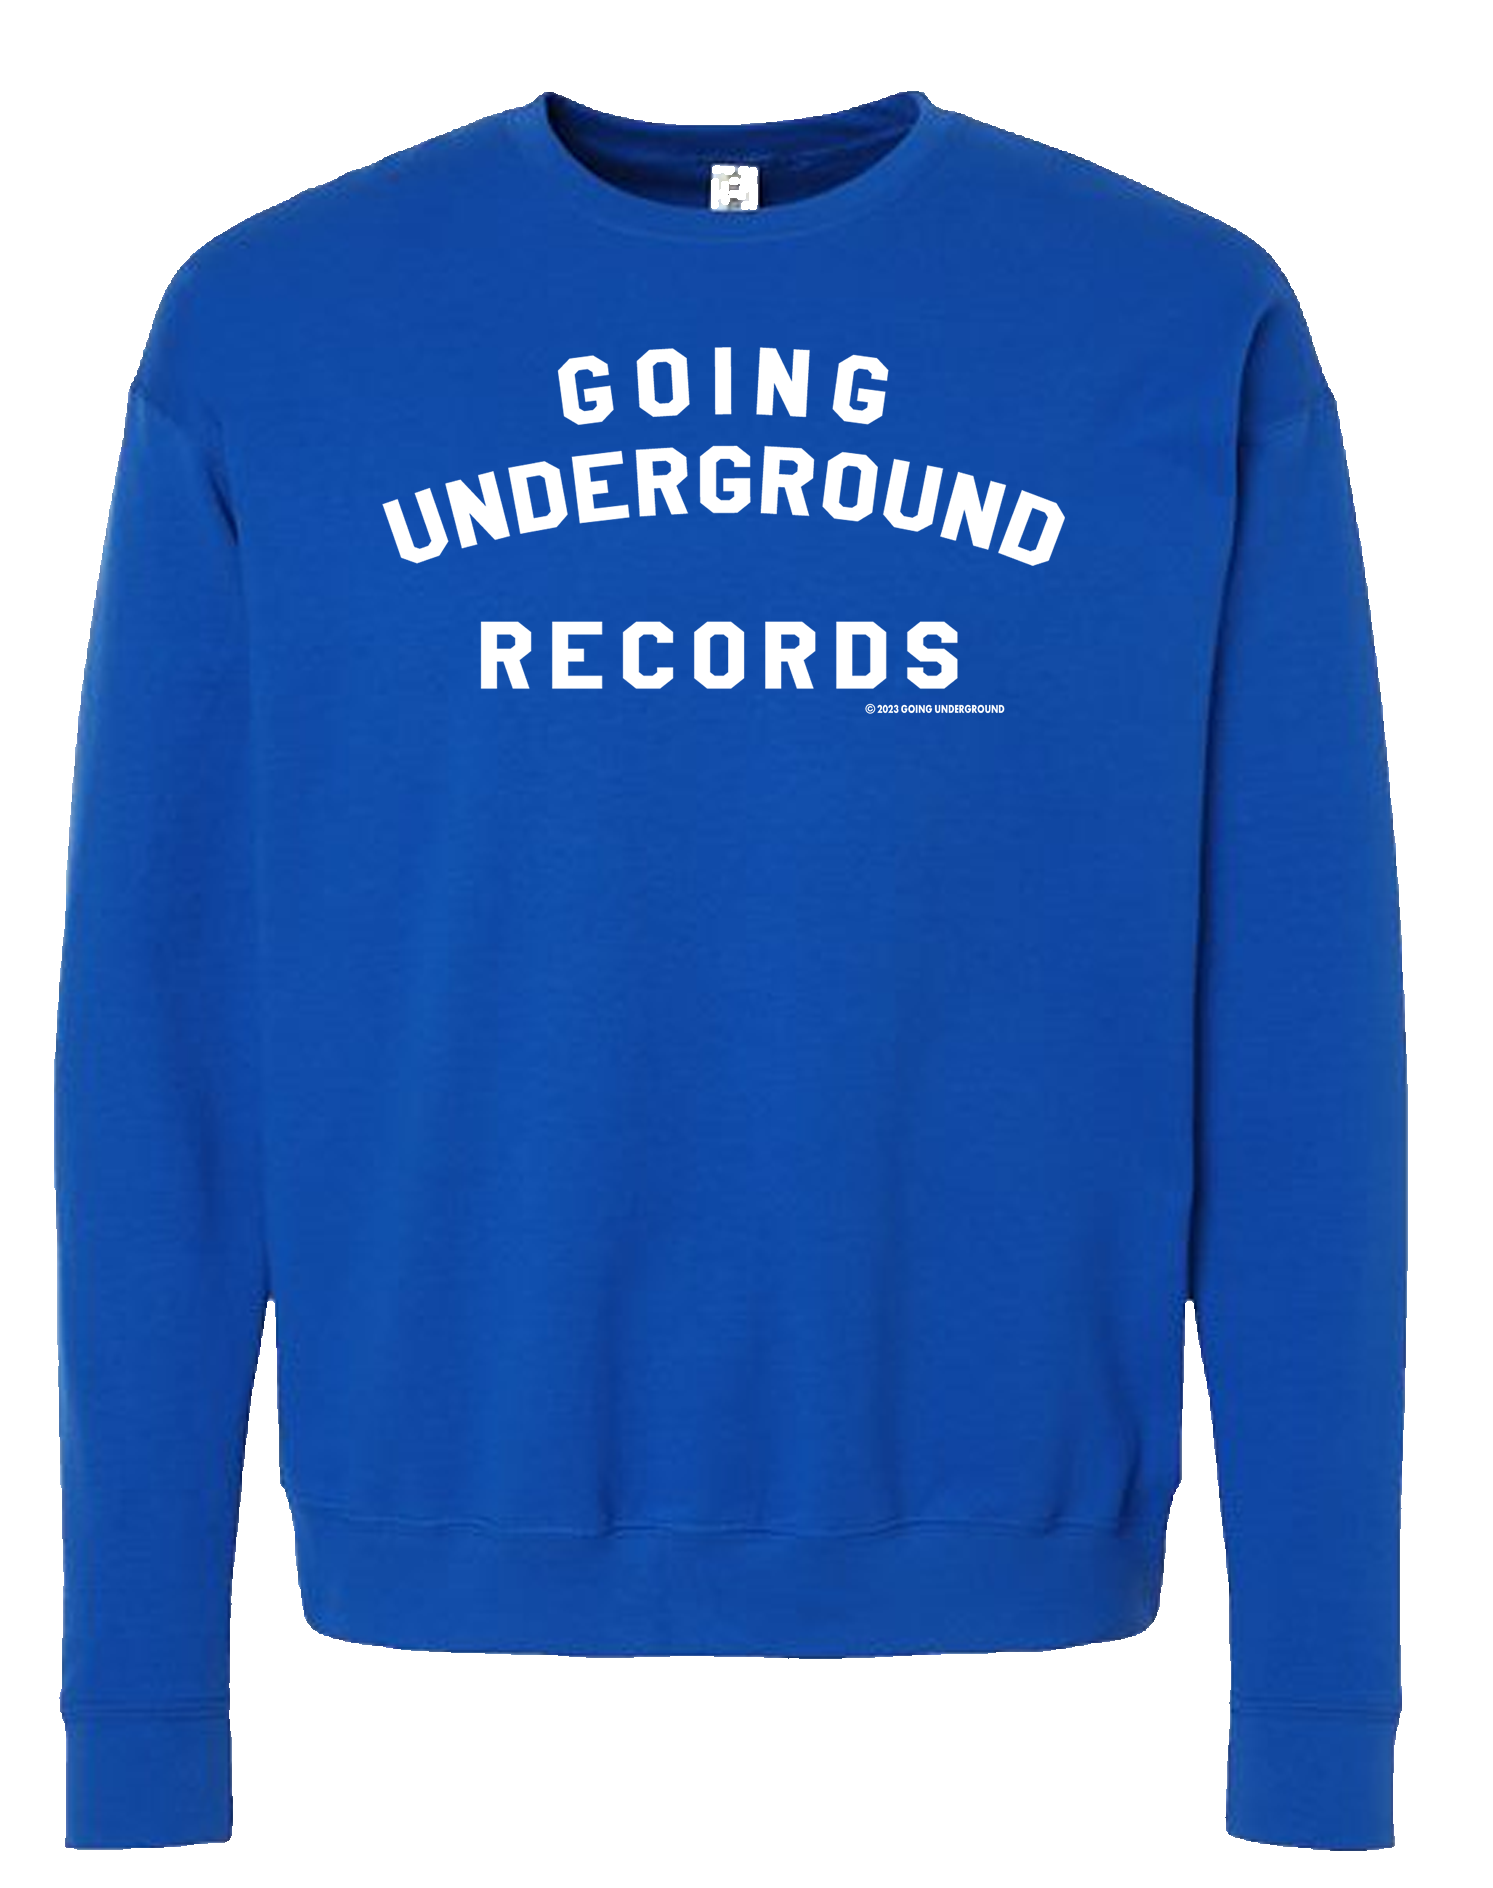 GOING UNDERGROUND - COLLEGE Crewneck Sweatshirt